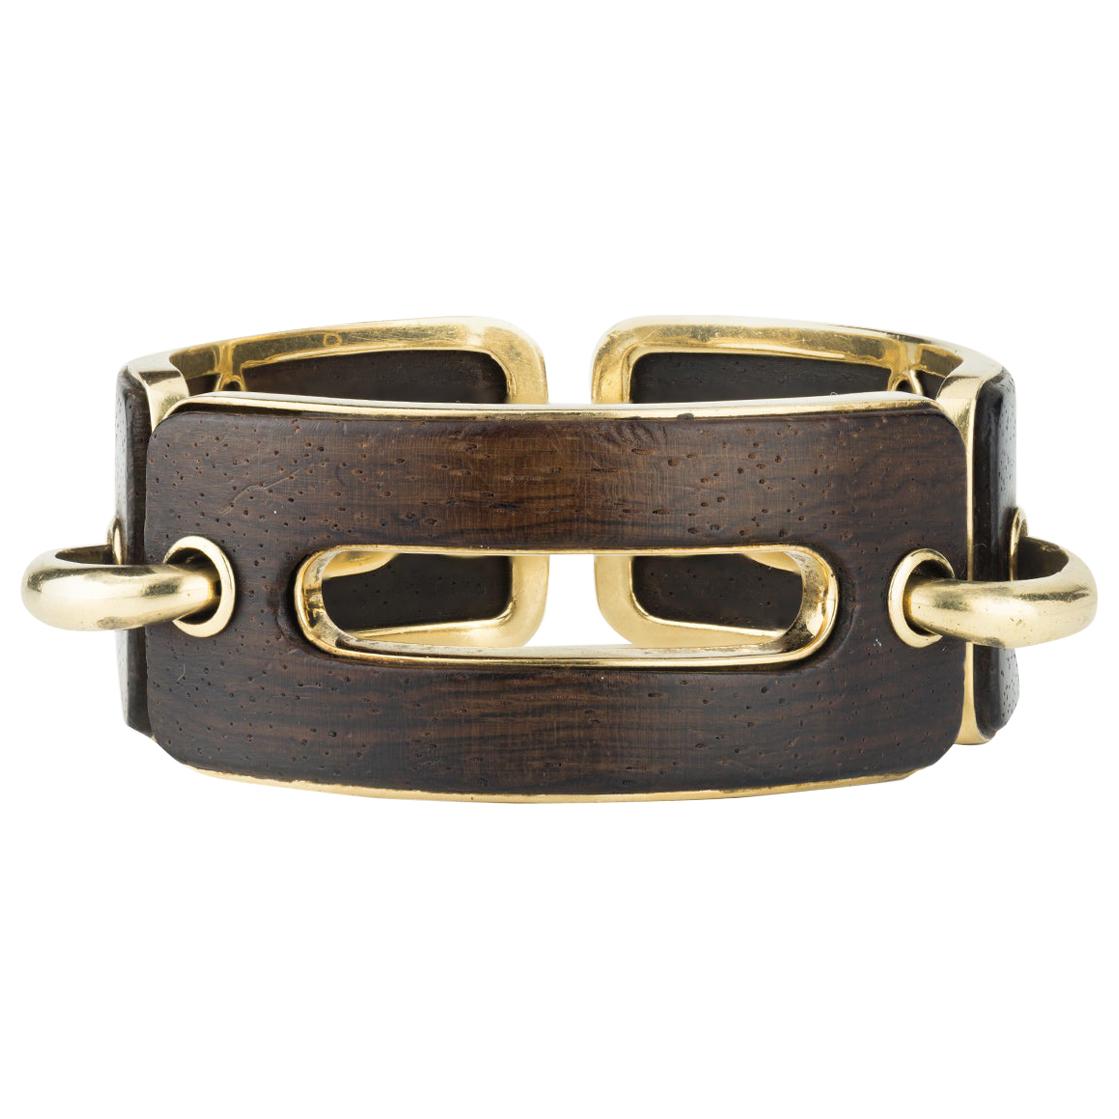 Snakewood and Gold Link Bracelet by Percin for Hermès